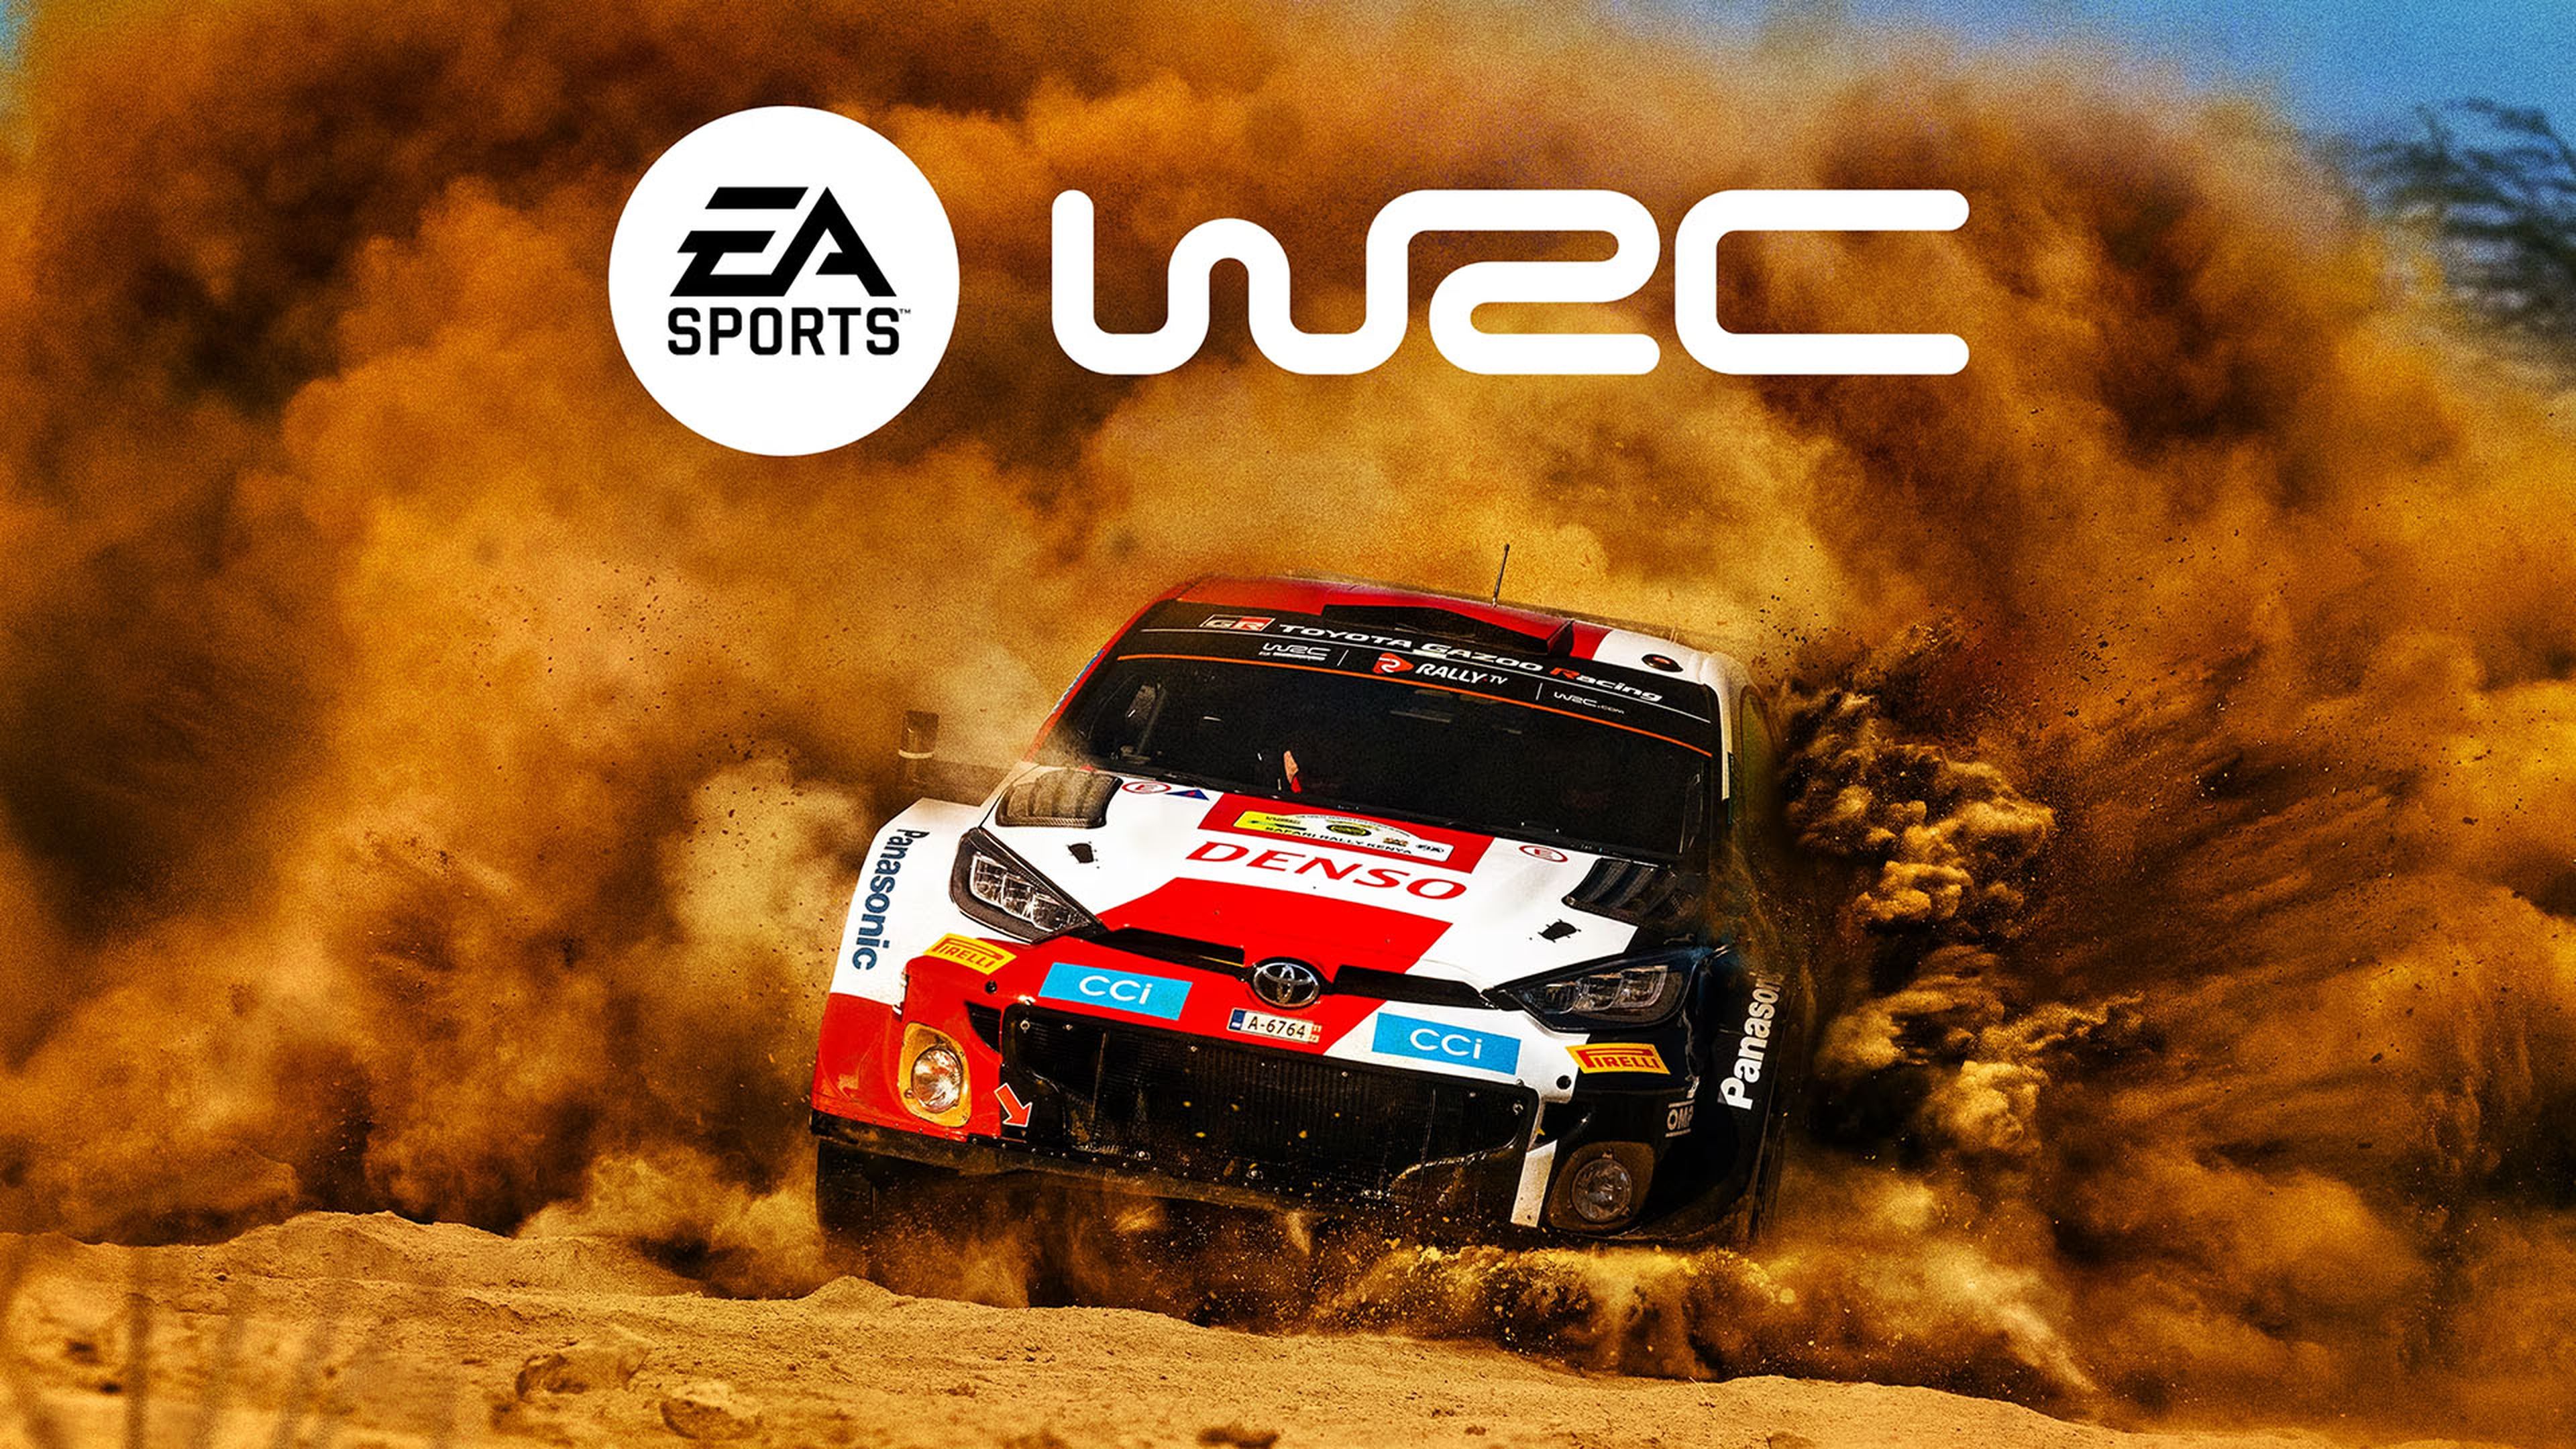 Nuevo simulador de rally EA Sports WRC anunciado con tráiler y fecha